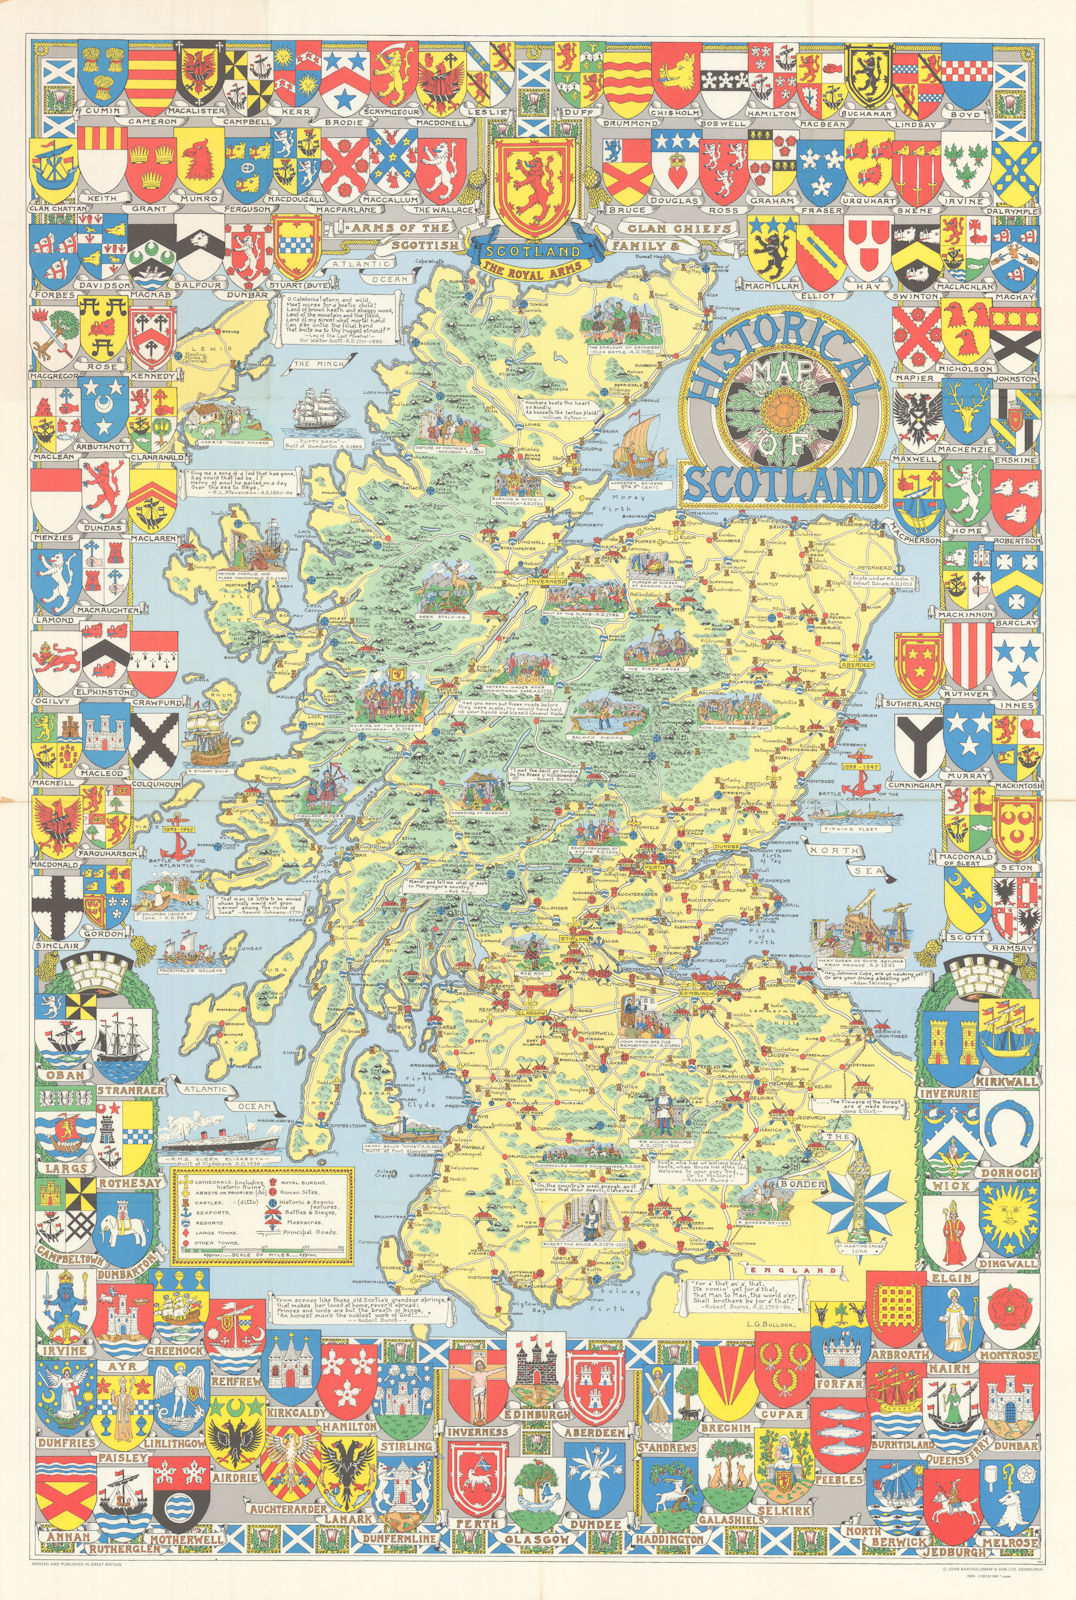 Scotland Historical Map. Family crests. Battles dates. 100x67cm BARTHOLOMEW 1985